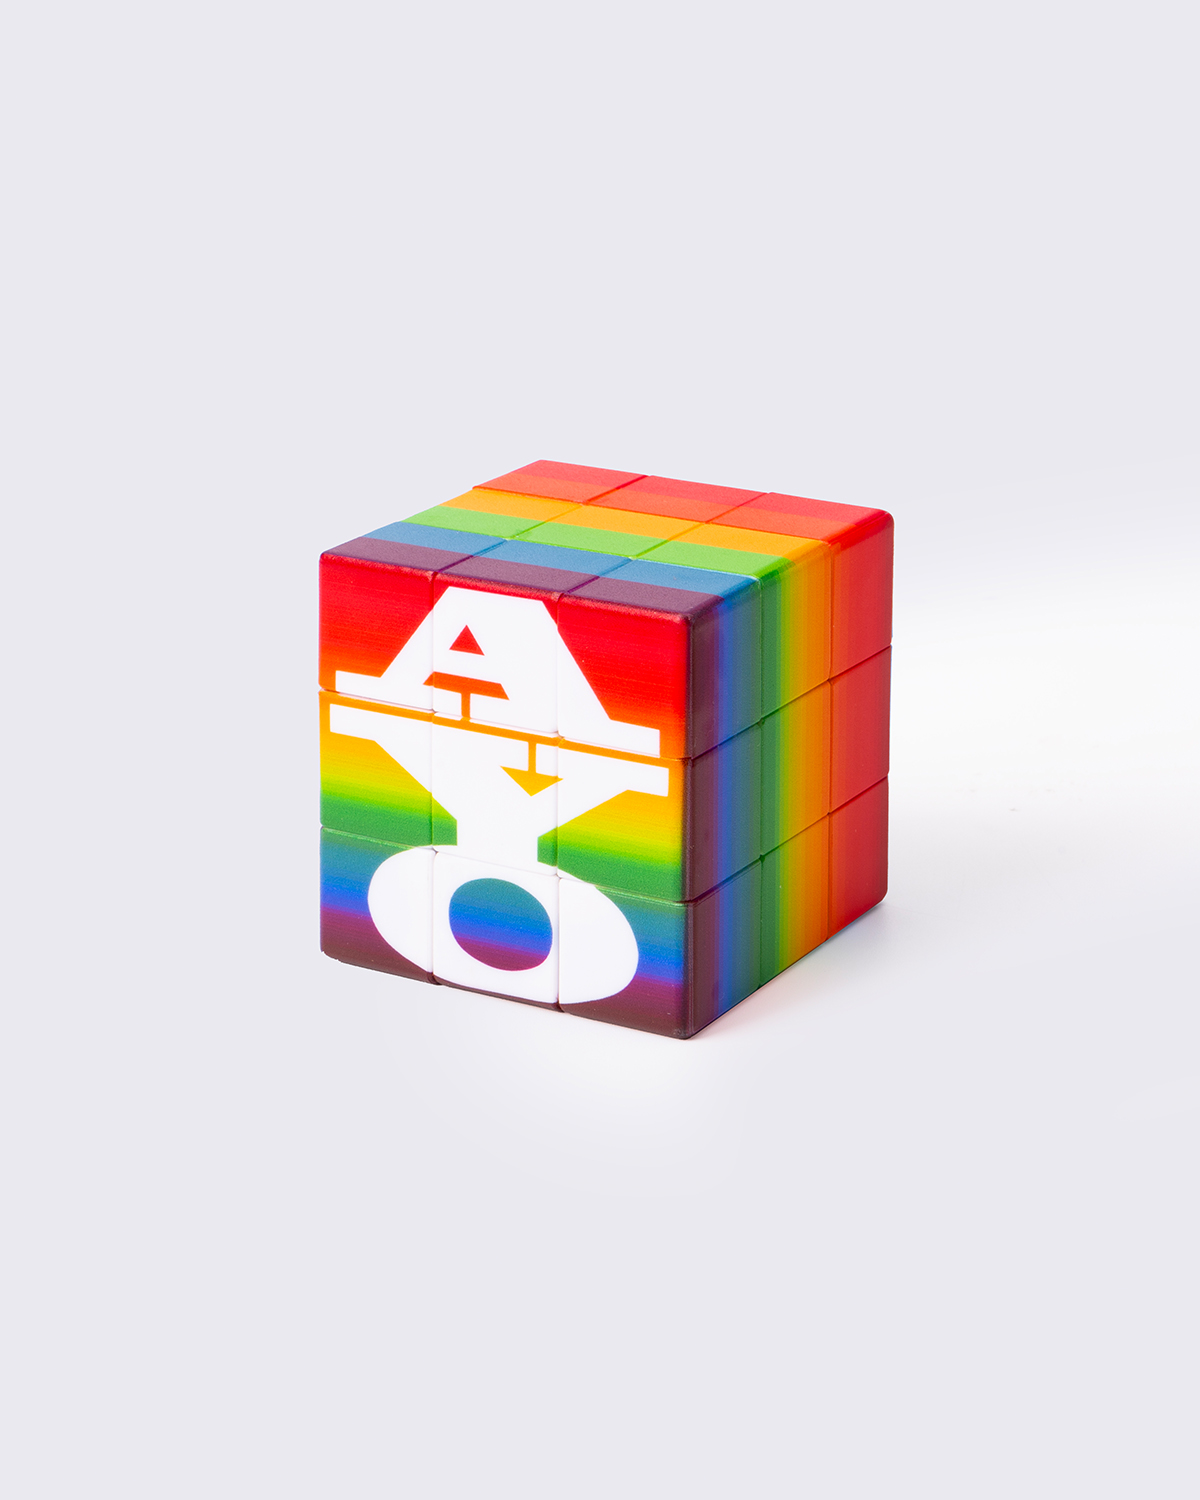 Ay-O Rubik's Cube